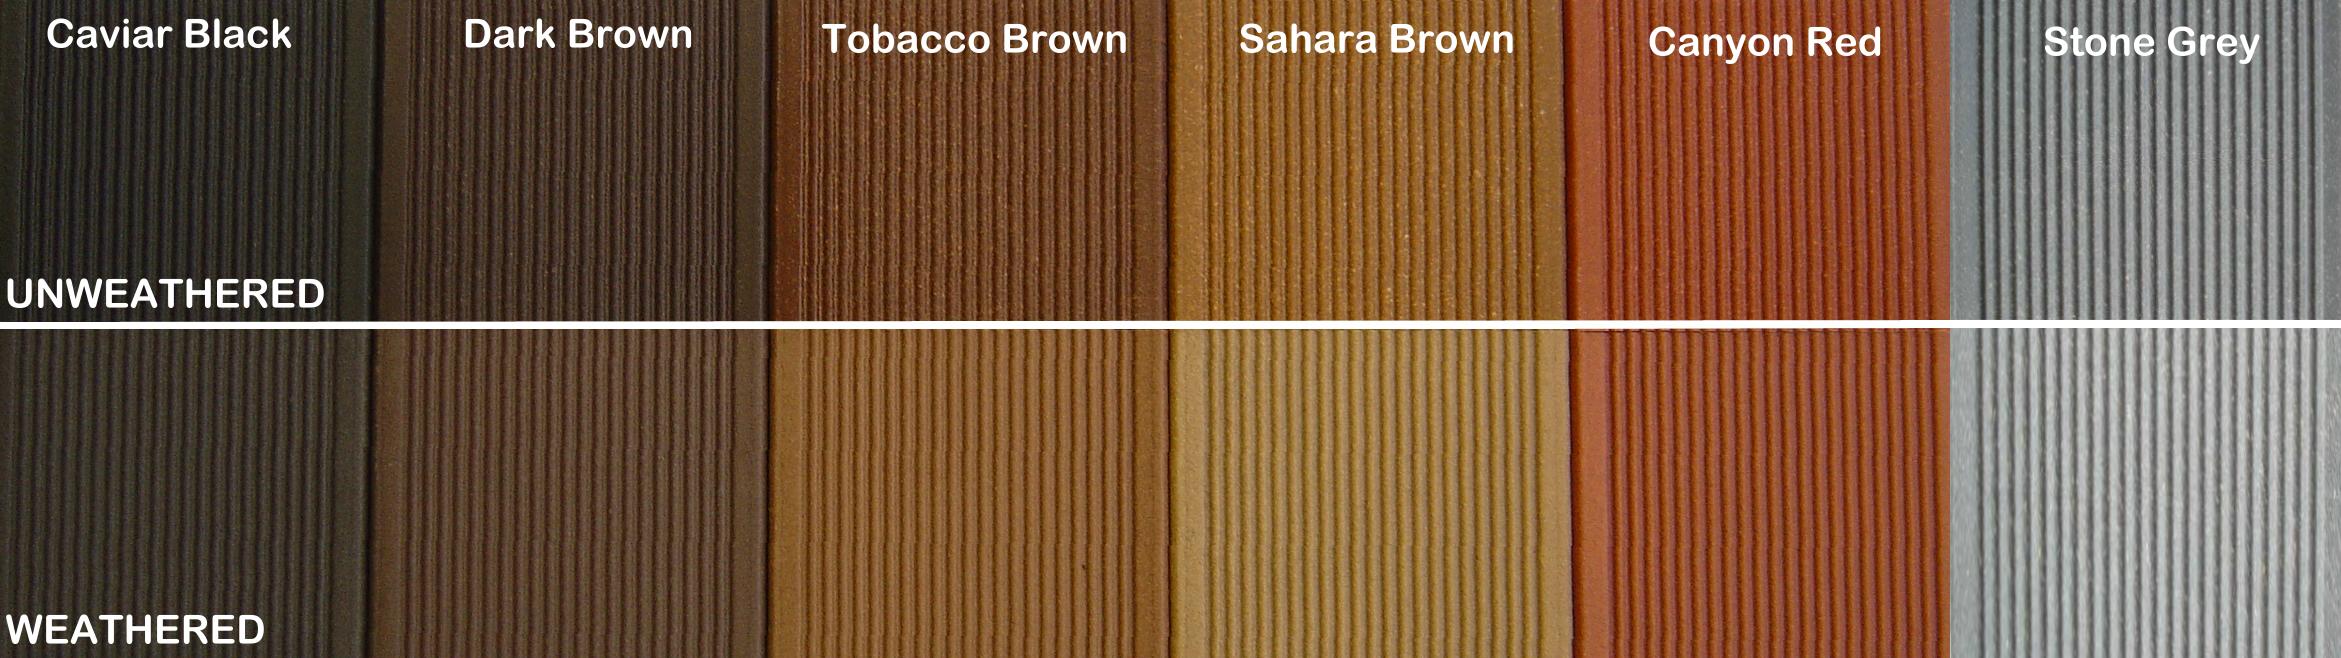 Vedlikeholdsfritt gulv til terrasser og brygger - colors before and after weathering.JPG - ByggDekor as